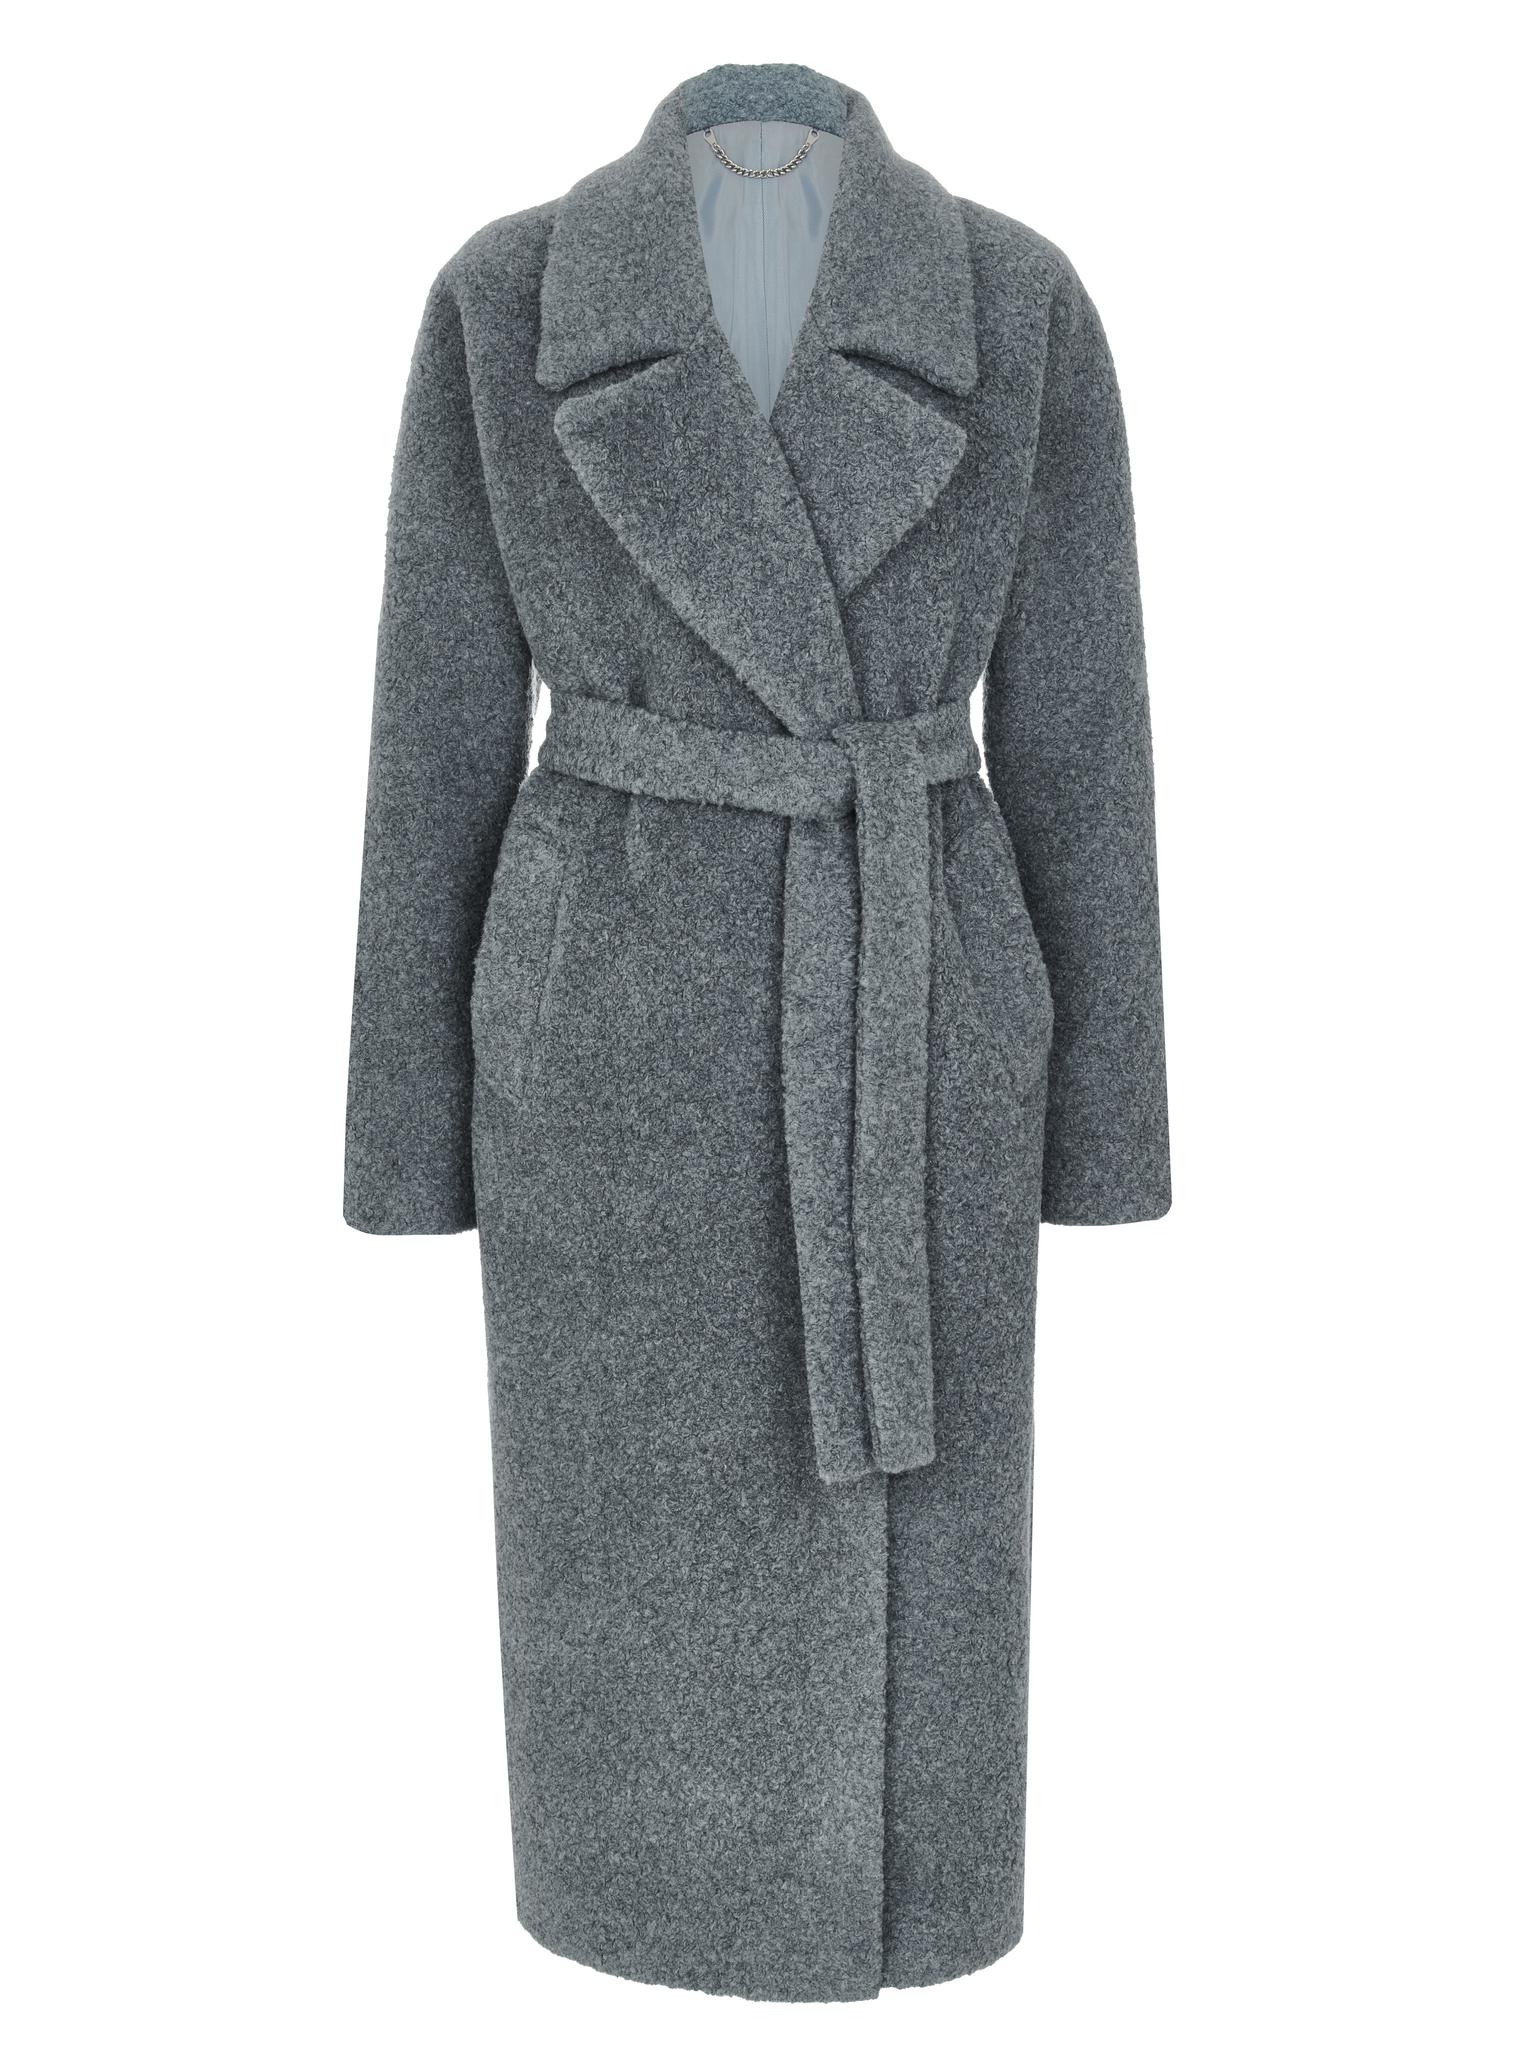 ПАЛЬТО ДЕМИСЕЗОННОЕ > Пальто-халат с цельнокройным рукавом из овечьей шерсти  цвета винтажный синий купить в интернет-магазине